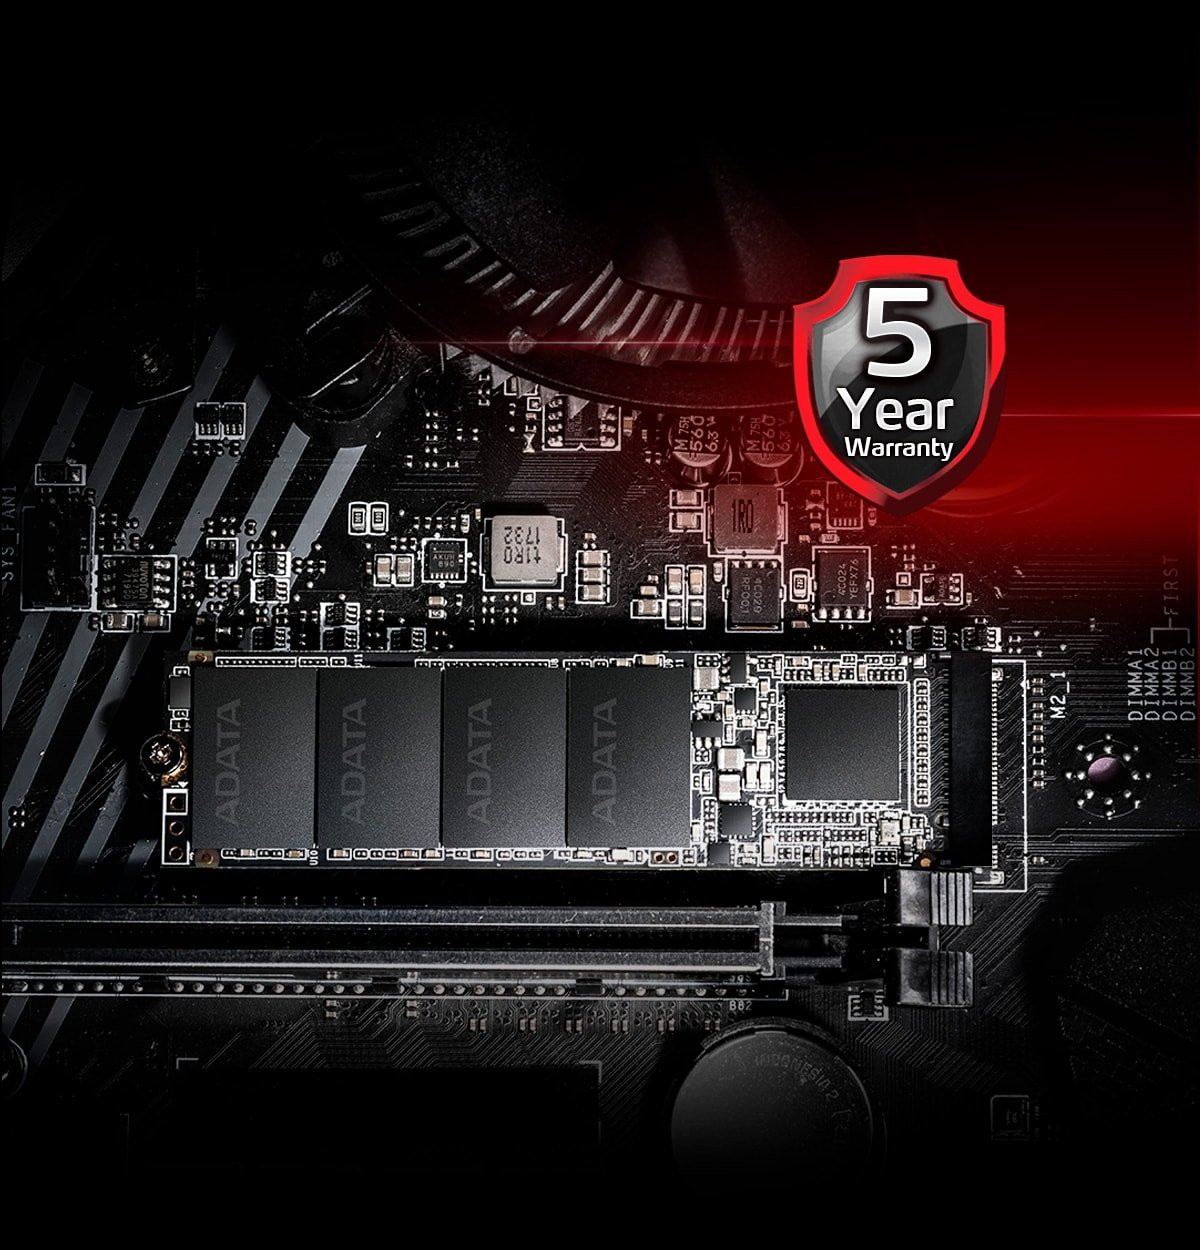 Dysk SSD Adata XPG SX6000 Pro 512GB informacja o 5-letniej gwarancji